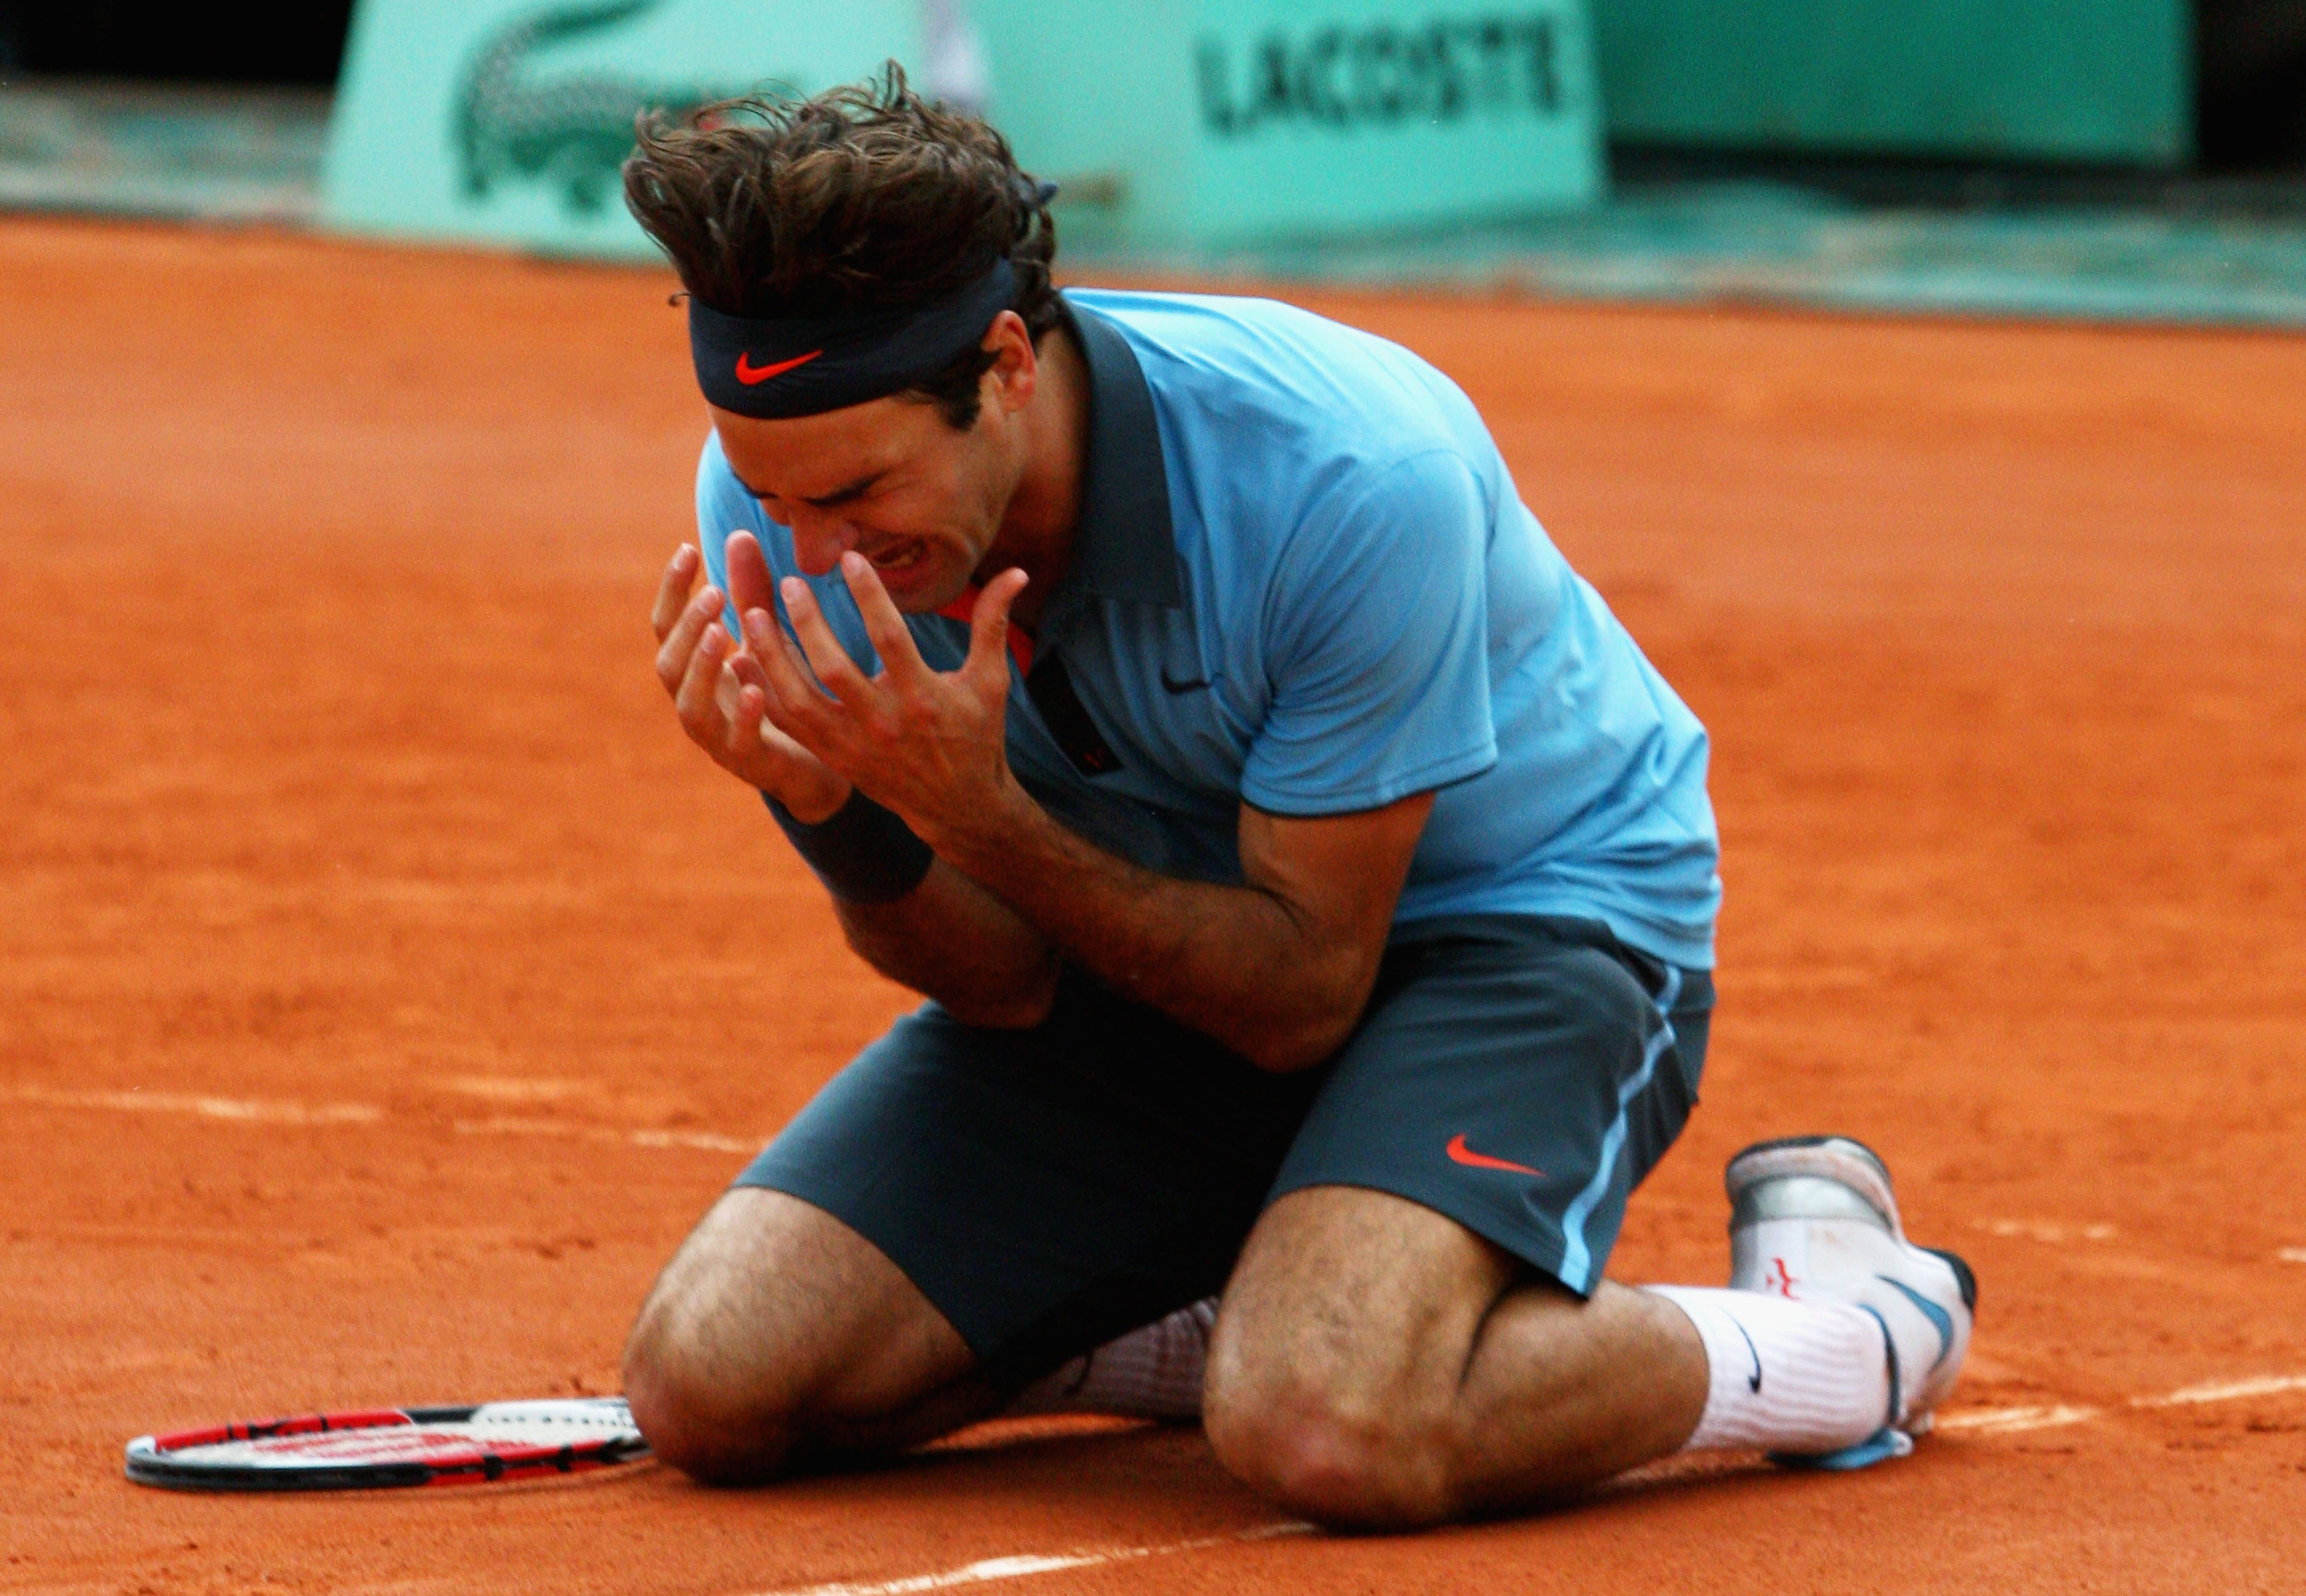 ”Cel mai afectat este Roger Federer”. Martina Navratilova nu se teme de verdicte în pandemie